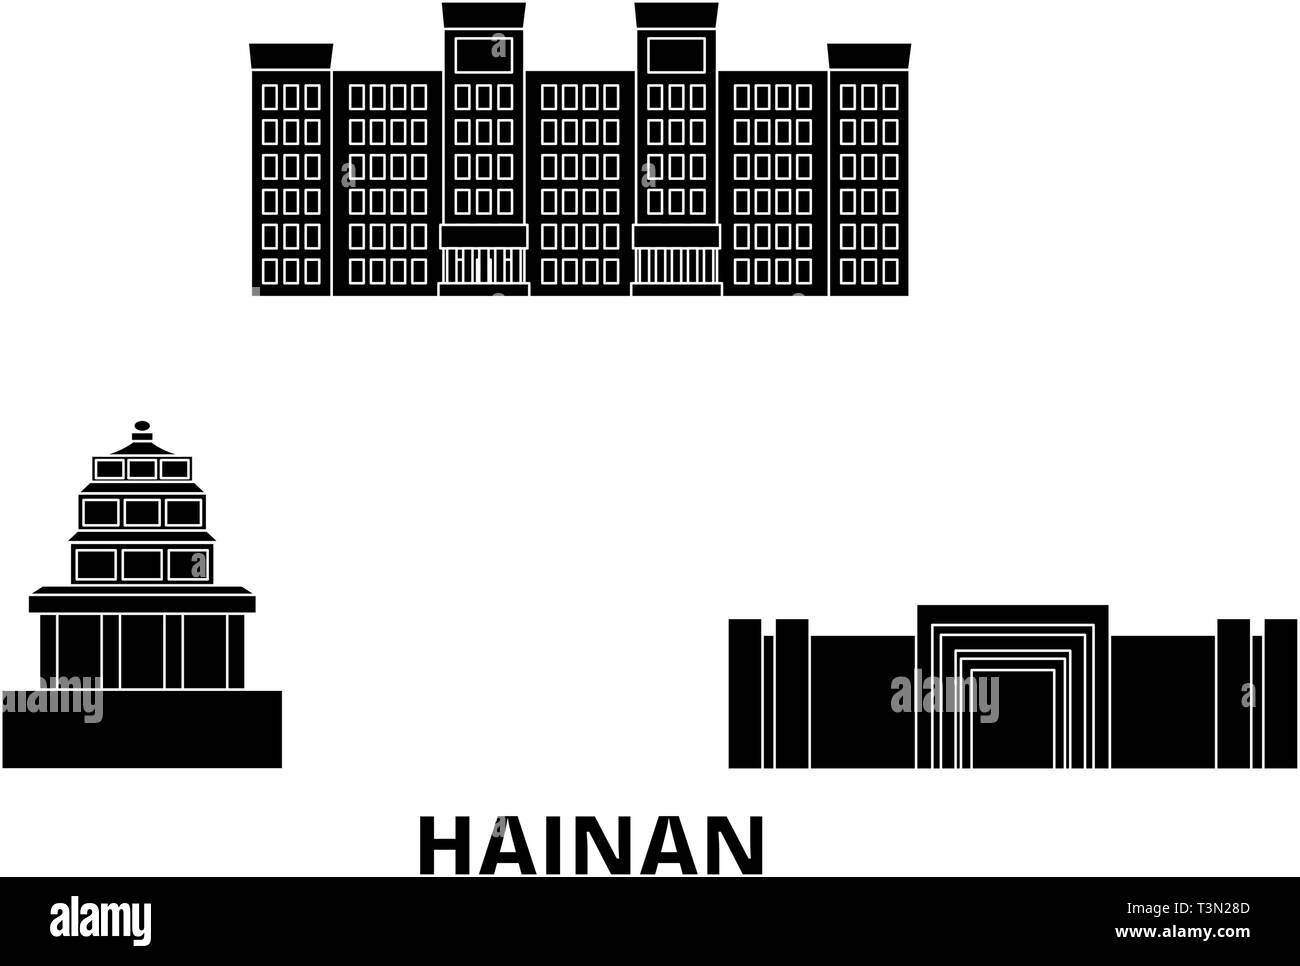 China Hainan Flachbild reisen Skyline. China Hainan schwarz Stadt Vektor-illustration, Symbol, Reisen, Sehenswürdigkeiten, Wahrzeichen. Stock Vektor